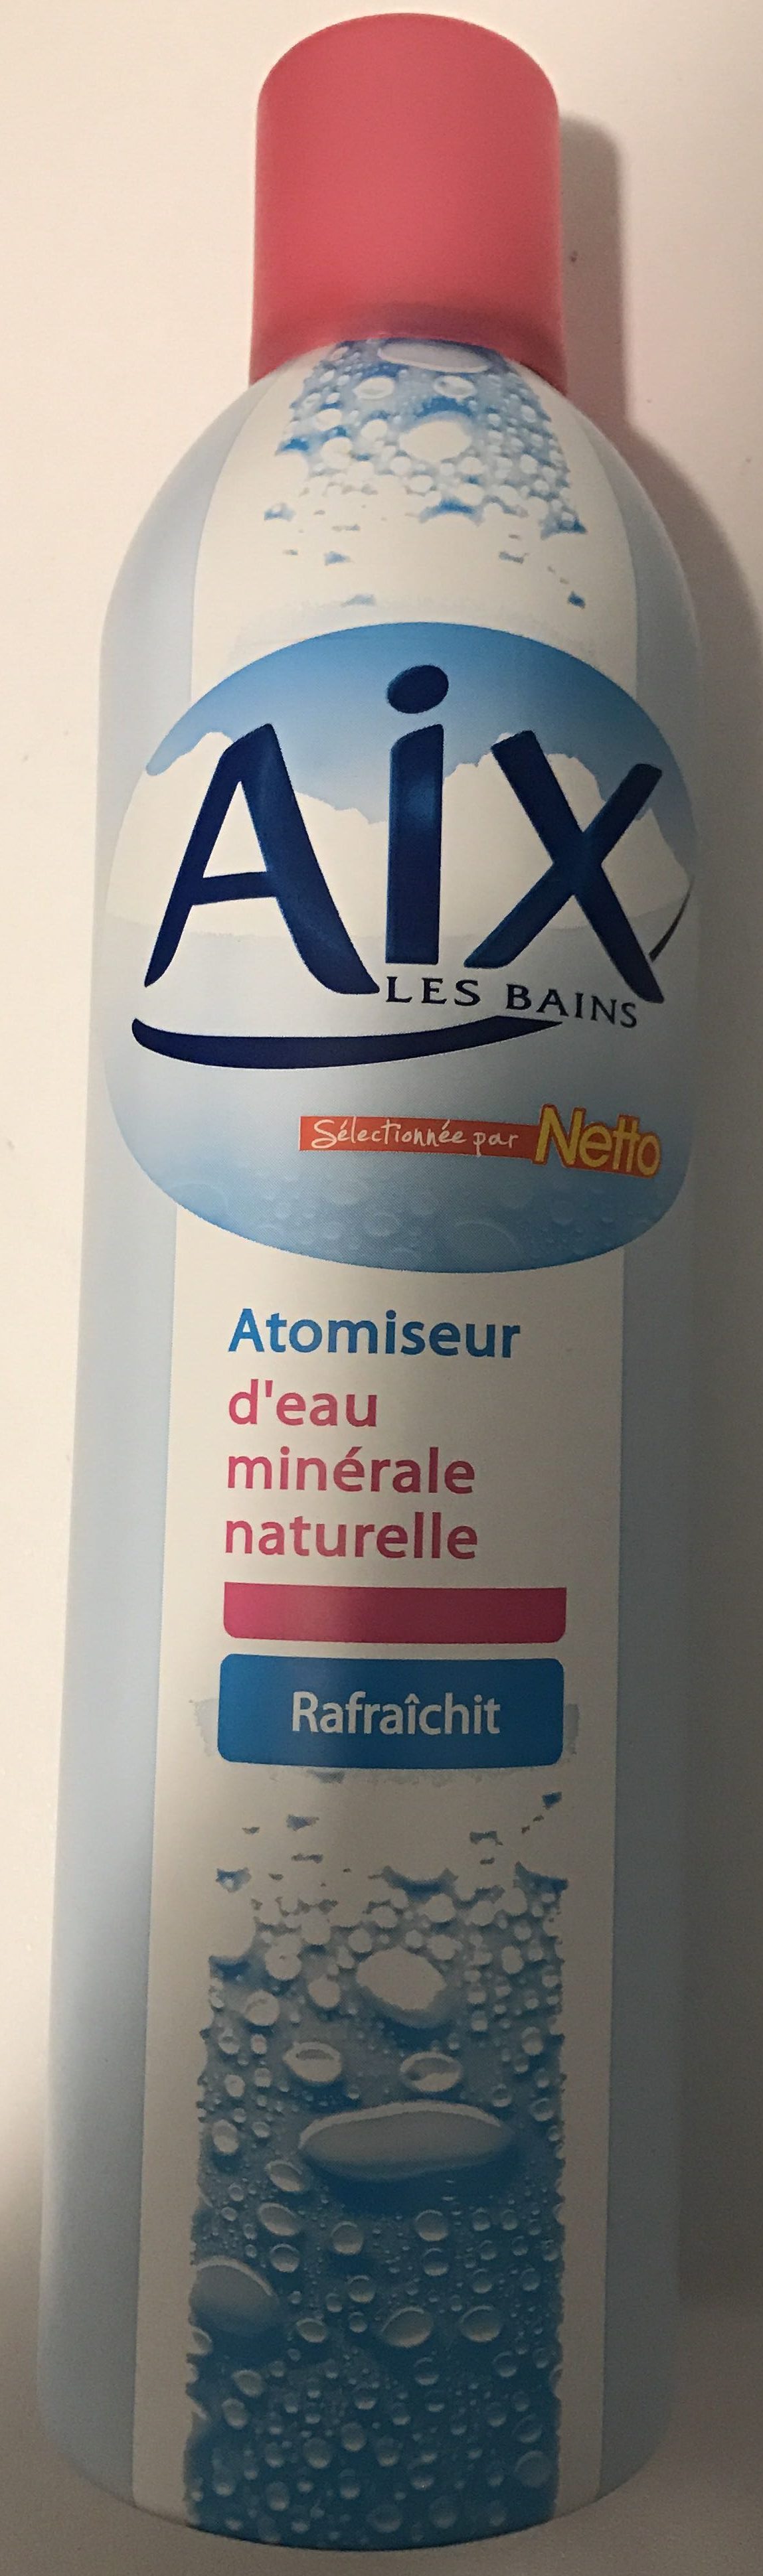 Atomiseur d'eau minérale naturelle - Tuote - fr